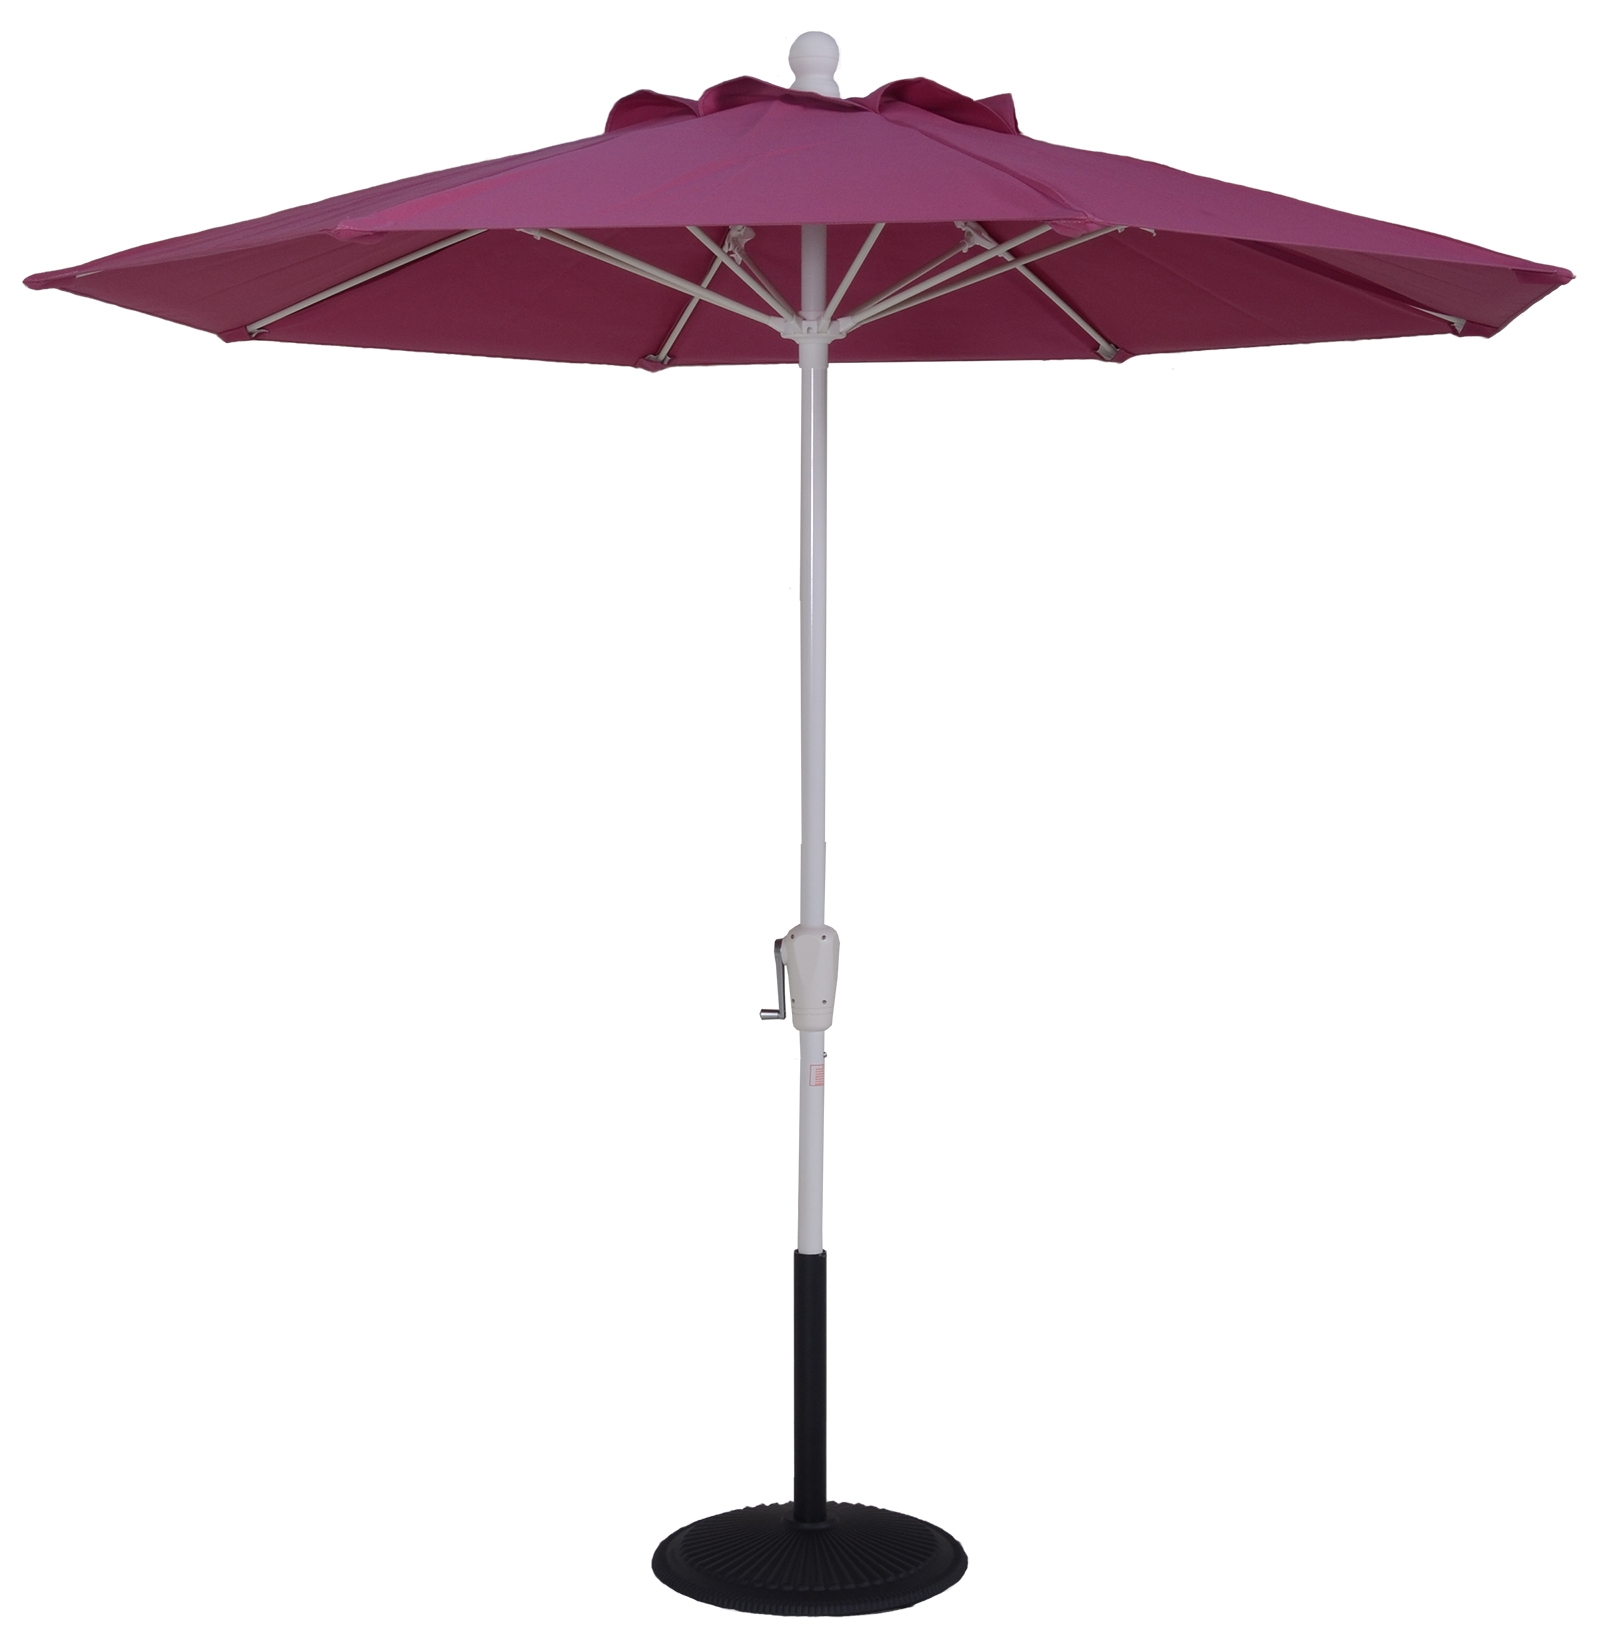 7.5 ft market umbrella with crank